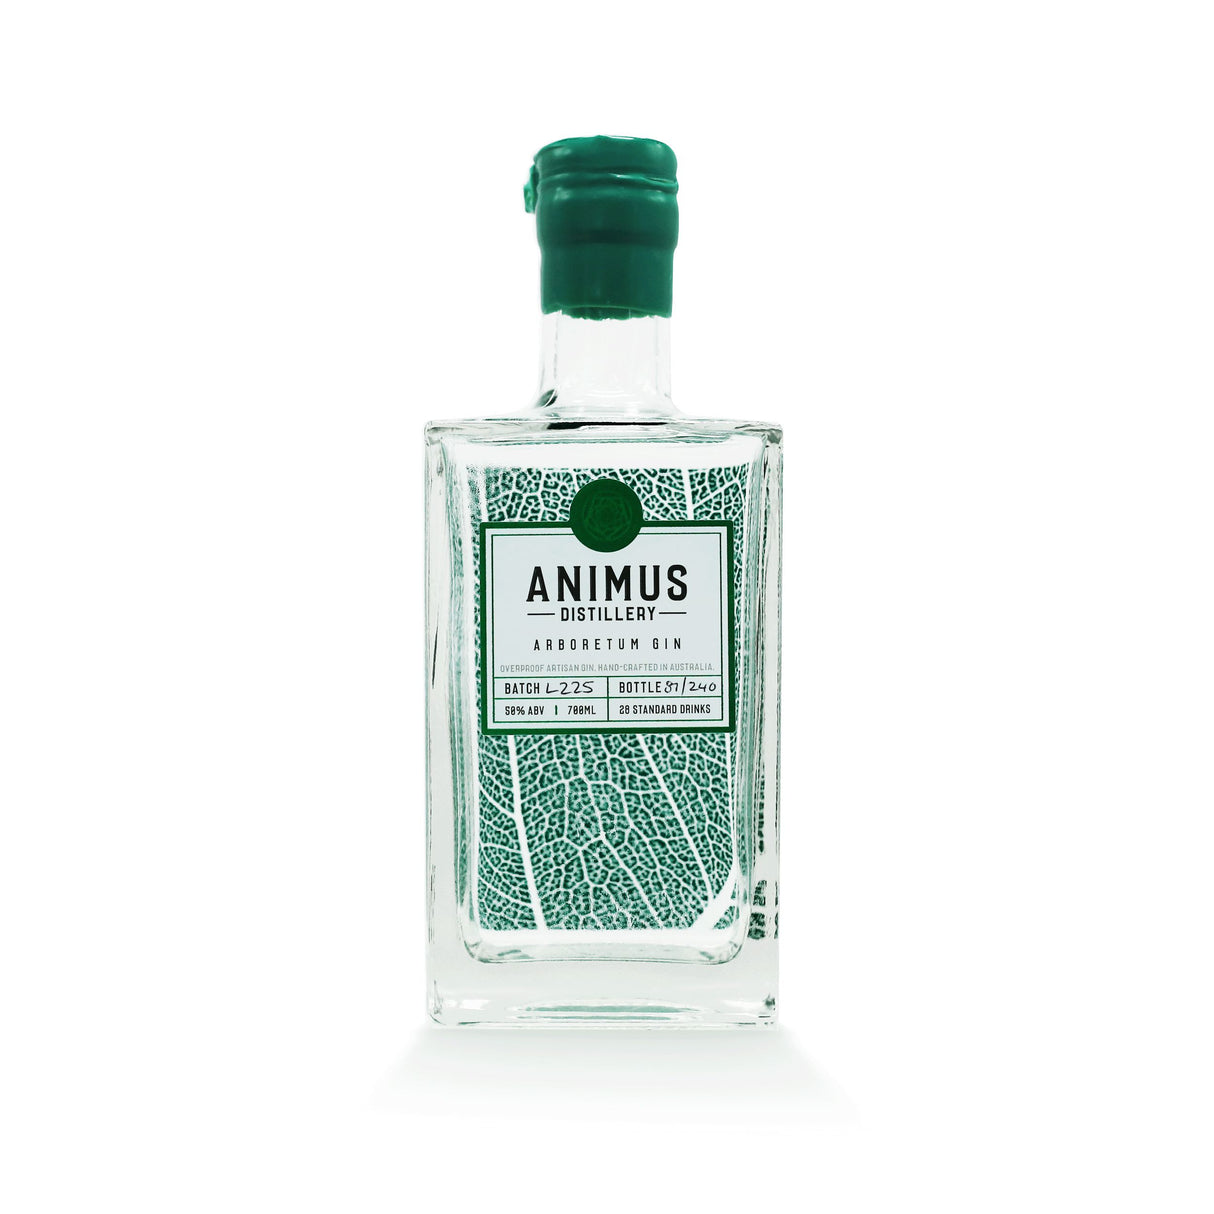 Animus Distillery Arboretum Gin 700ml-Spirits-World Wine